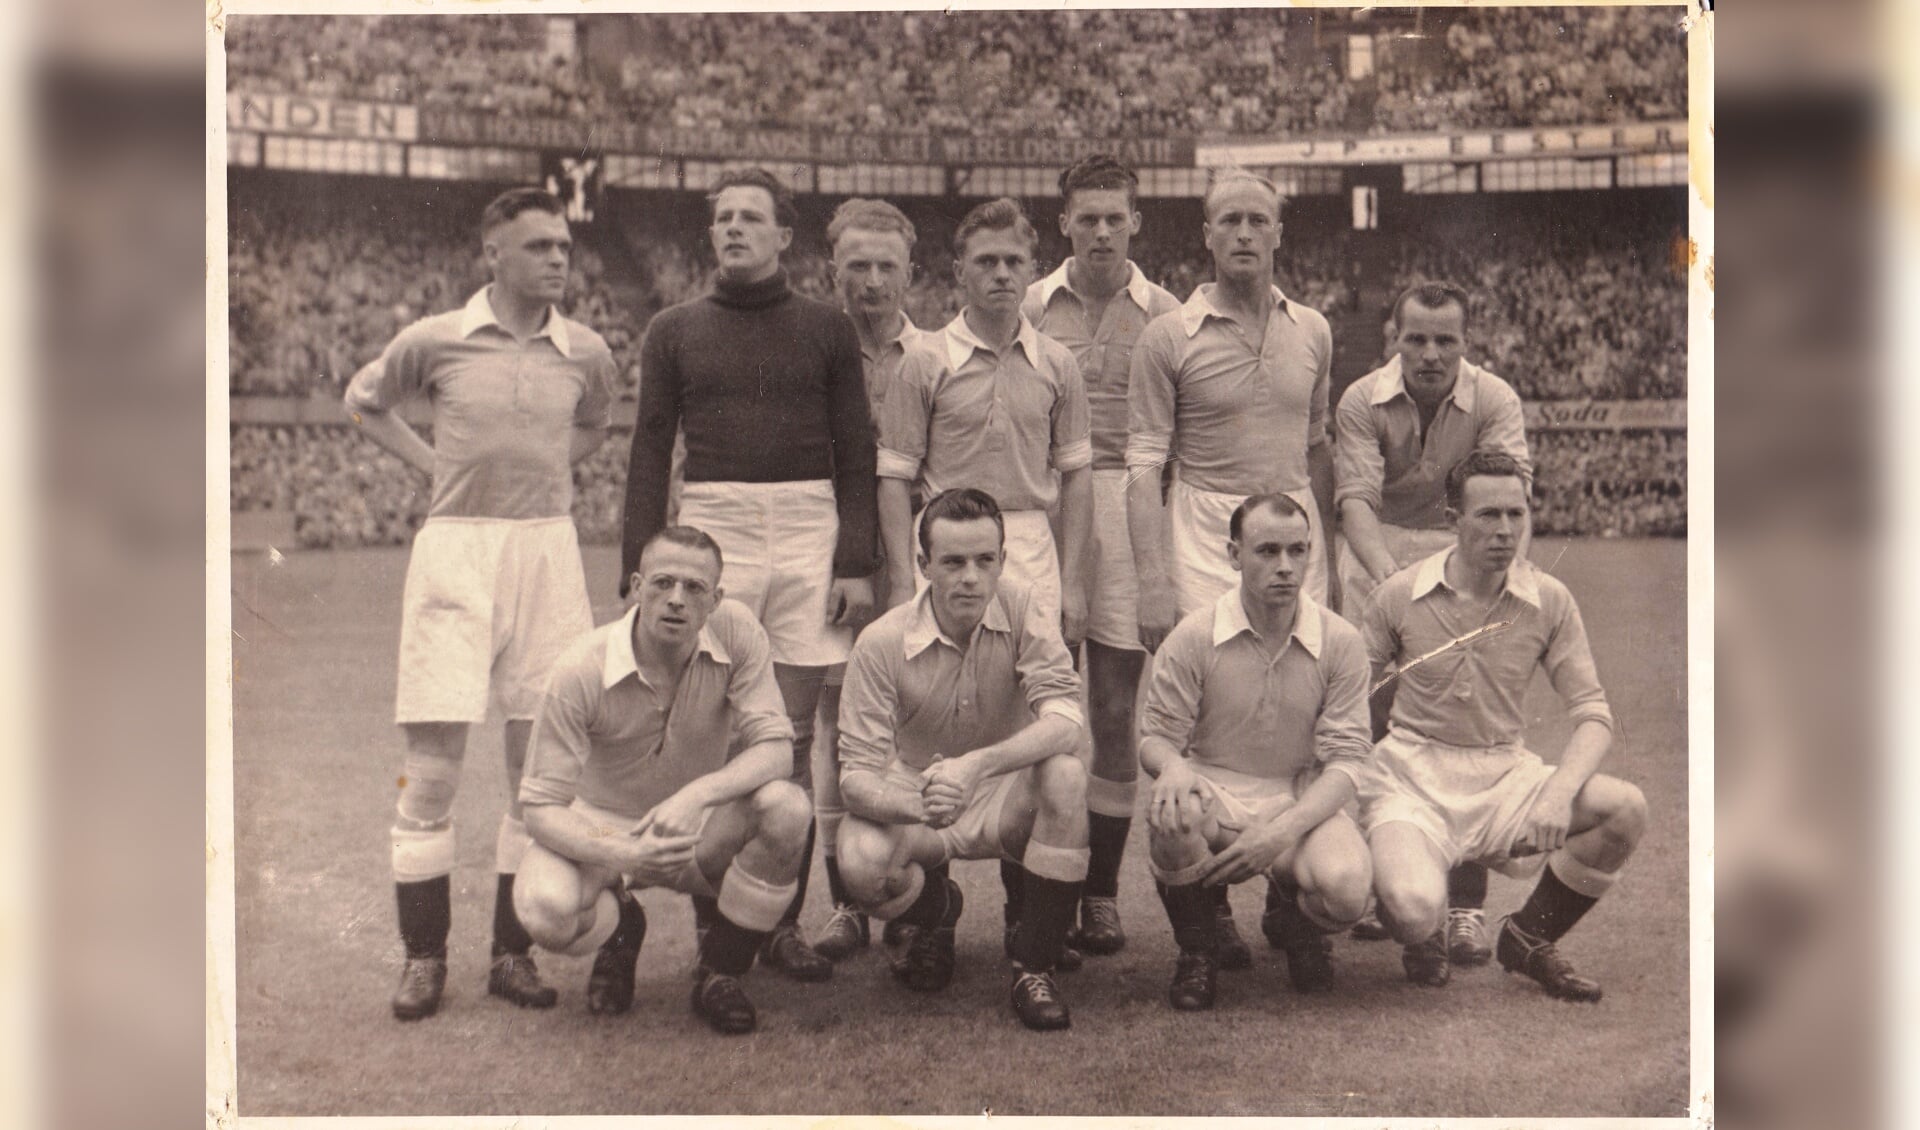 In 1952 werd Hermes DVS in de Kuip na een met 1-2 gewonnen beslissingswedstrijd tegen Sparta kampioen van de eerste klasse en speelde met de vijf andere districtskampioenen om de Nederlandse titel. (Foto: Archief Hermes DVS)